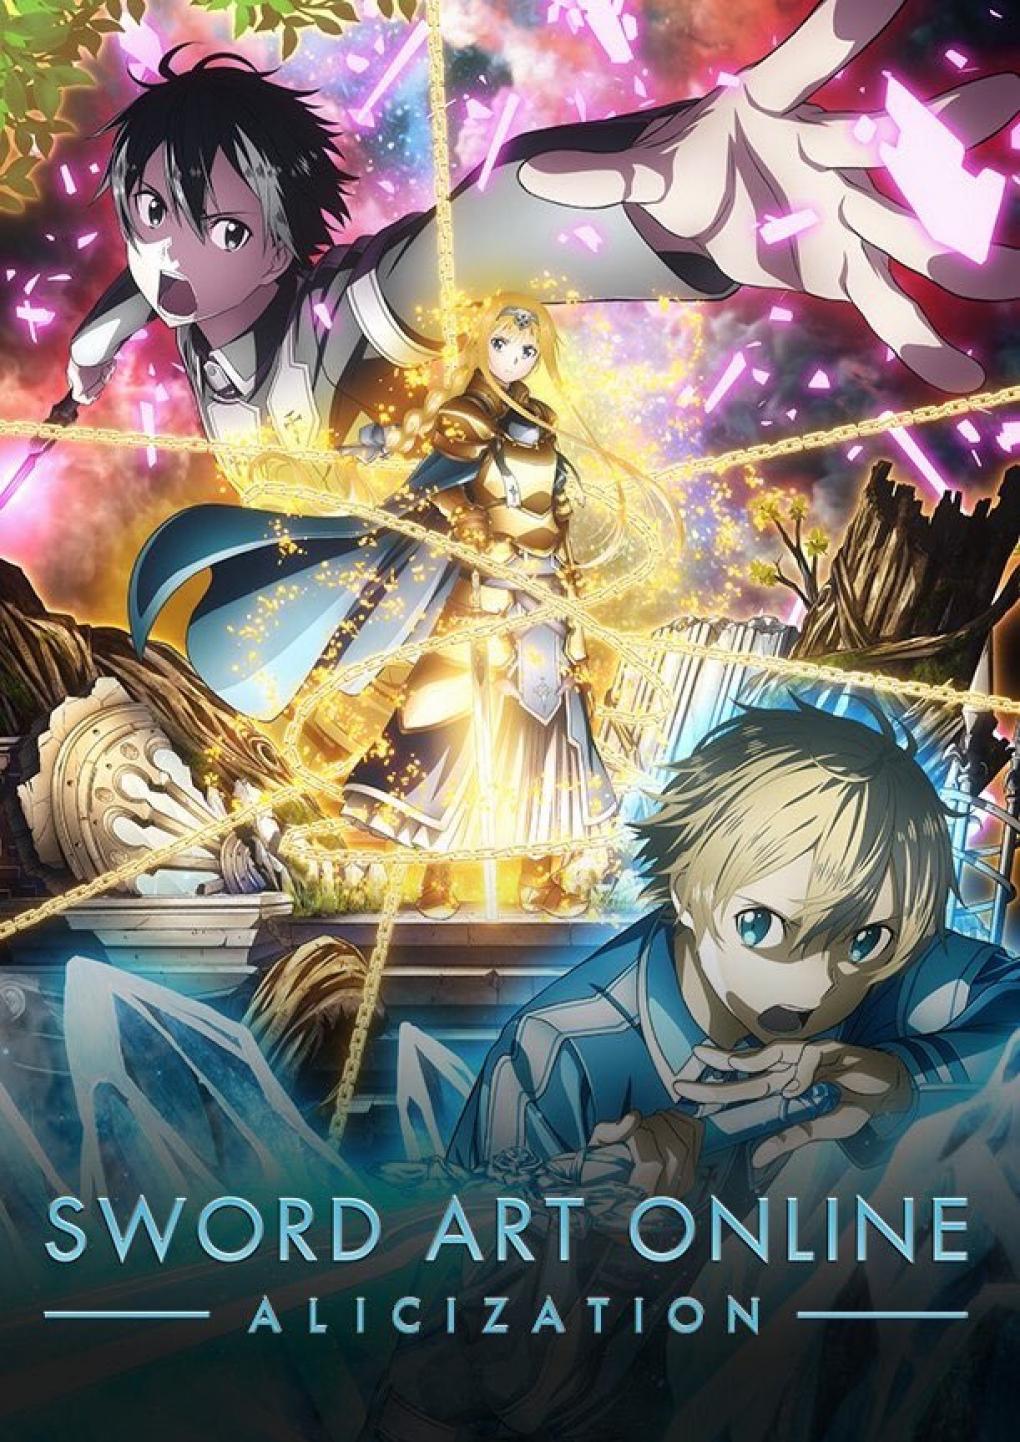 História Miraculous no Mundo de Sword Art Online. - História